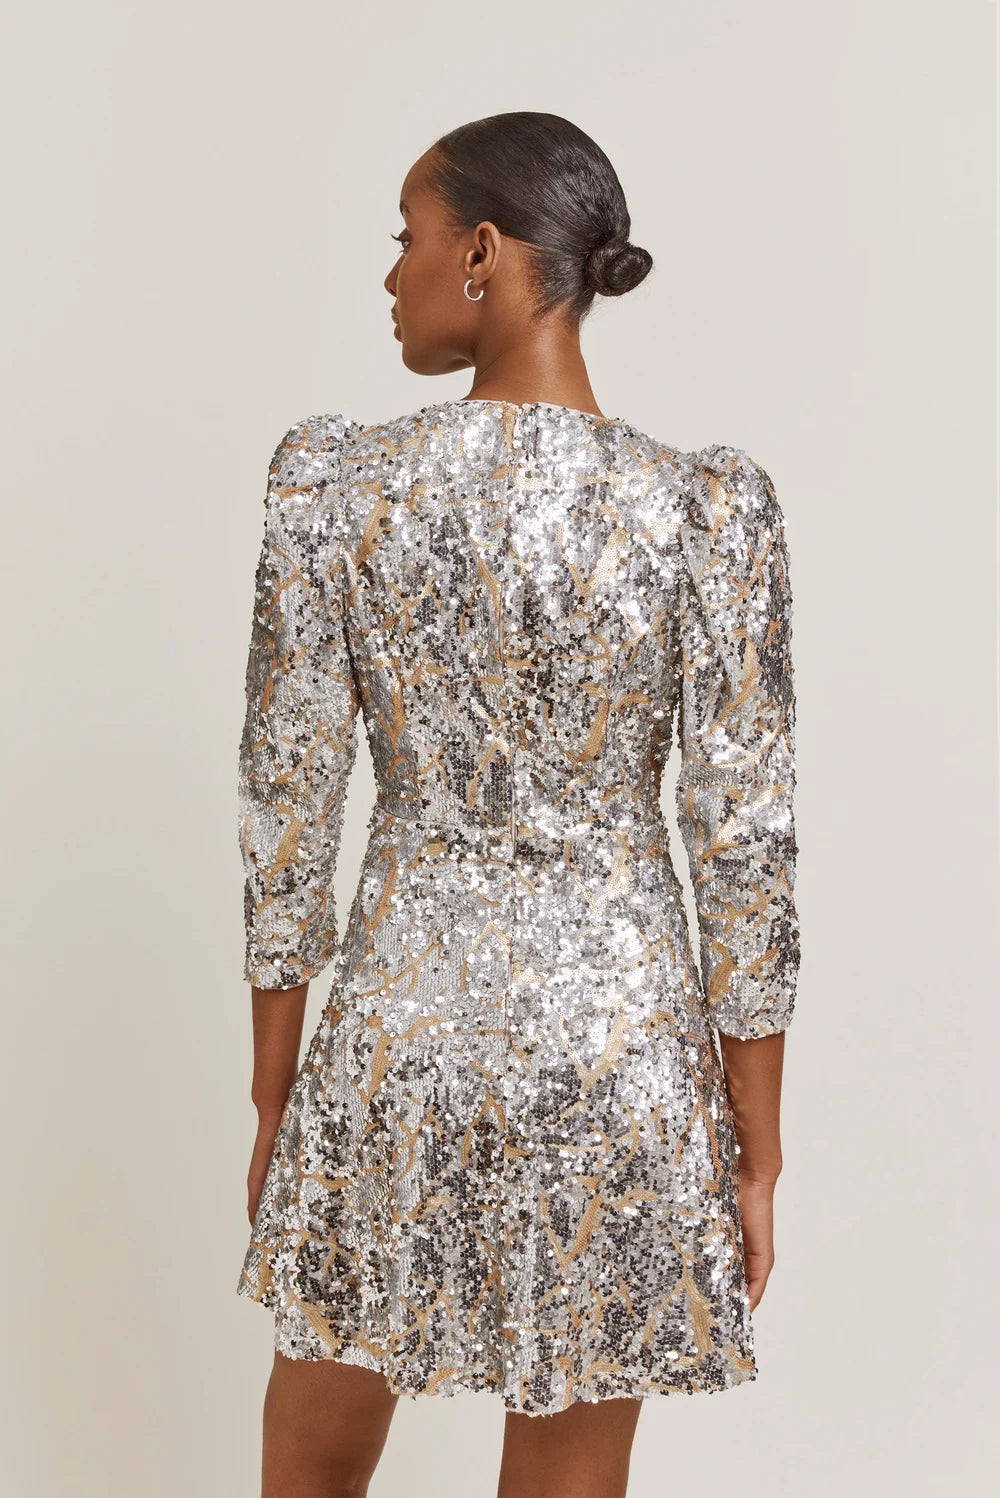 Hollis Sequin Dress - Stone Grey Sequin